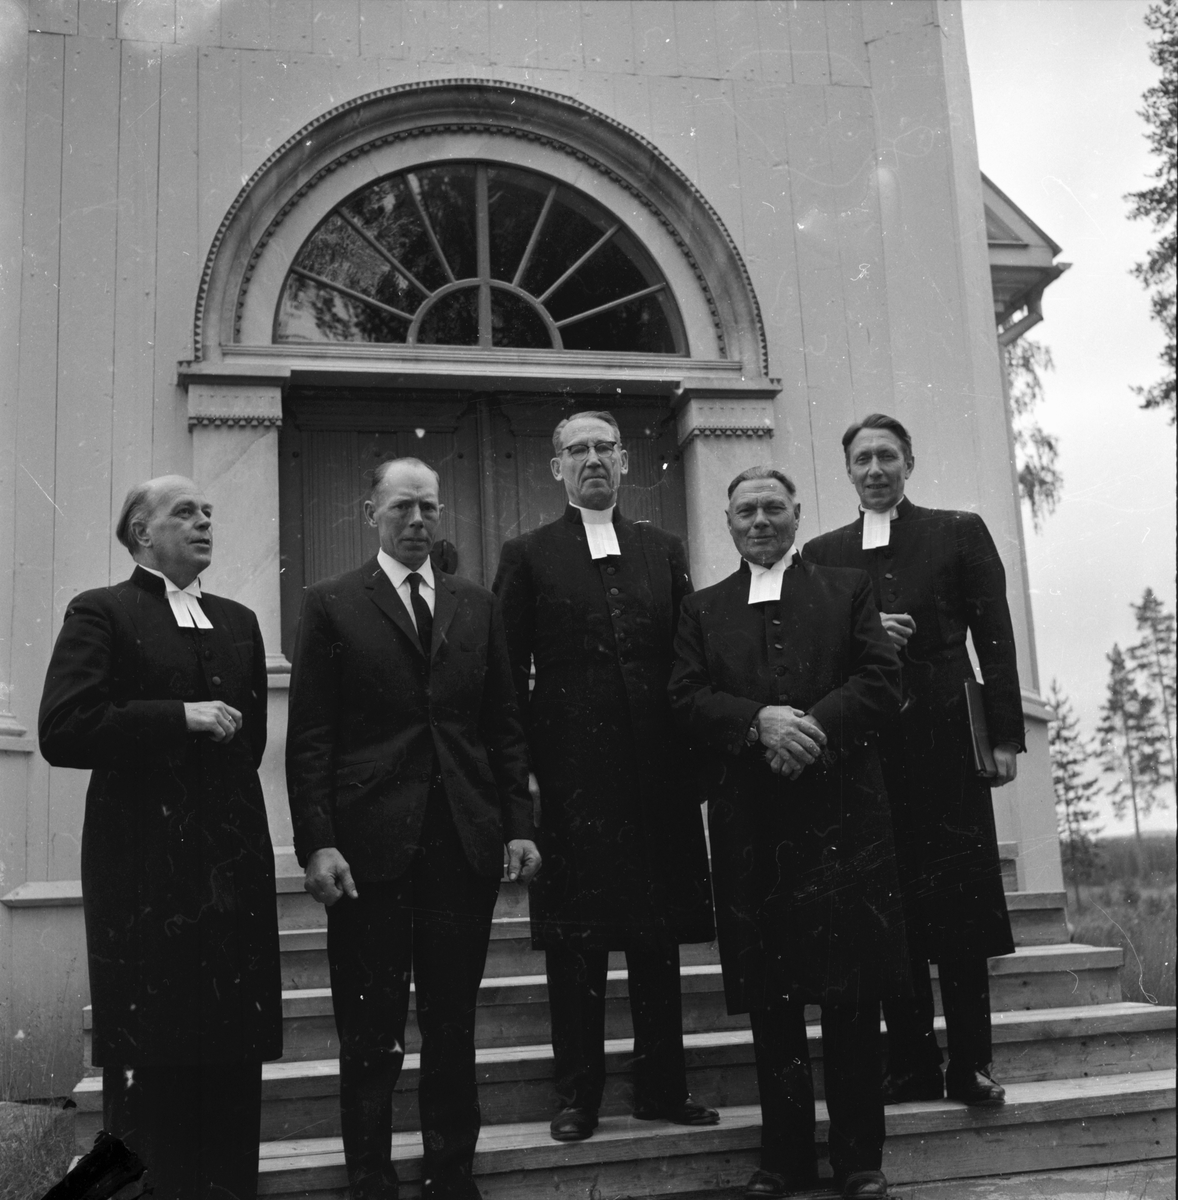 Visitation Annefors den 19/9 1962. I mitten Gunnar Liljestrand, Alfta. Till höger om honom Carl David Othsén, Gruvberget.